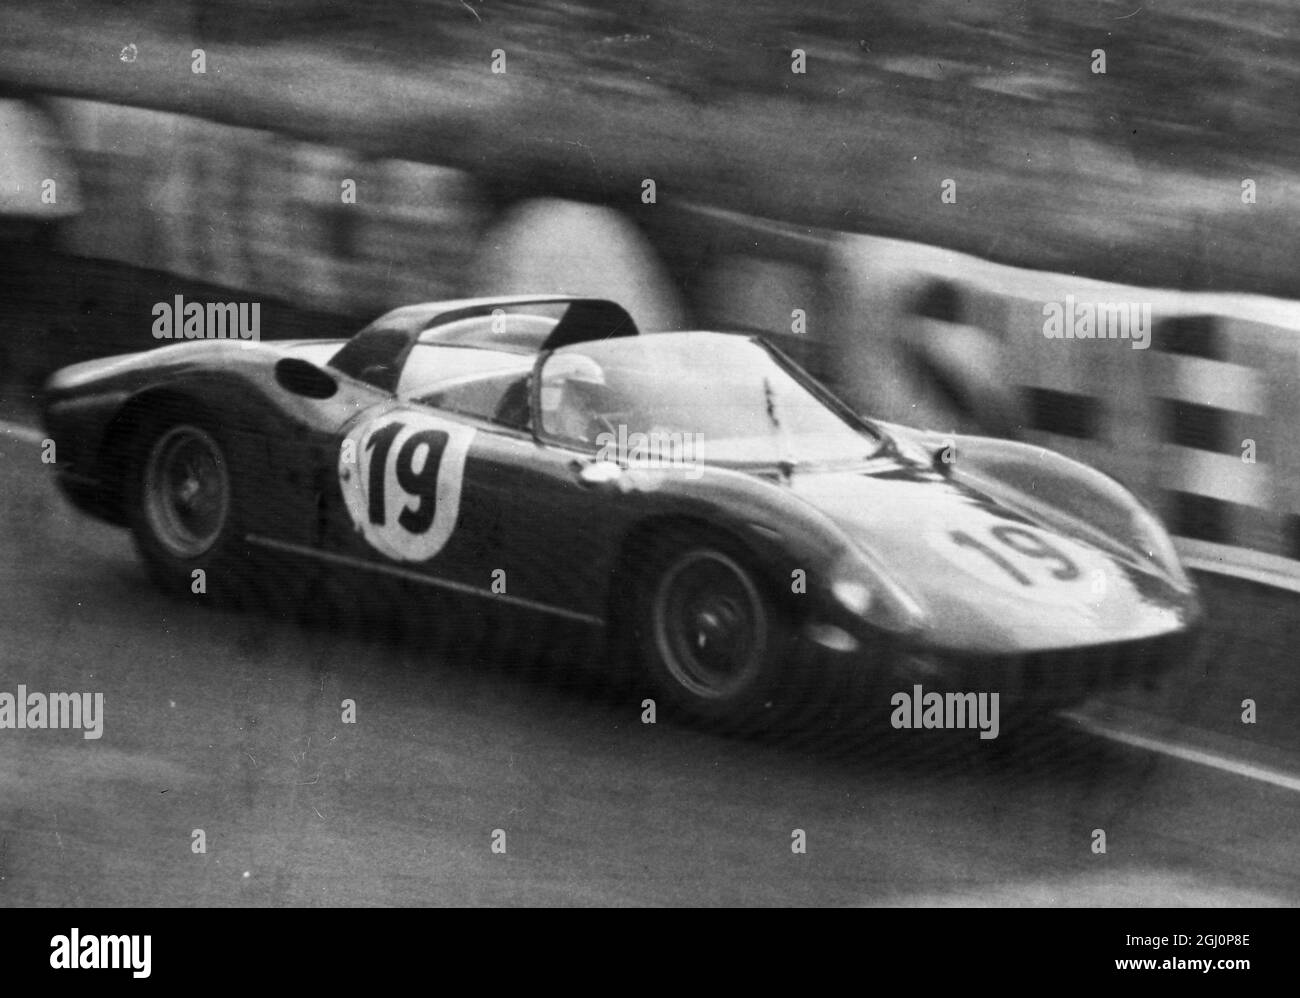 I Surtees si riscaldano . Le Mans , Francia ; pilota britannico , John Surtees prende la sua Ferrari italiana in giro per la pista durante le prove per la famosa gara di endurance di le Mans della 24 ore , che inizia più tardi . Surtees ha già registrato la velocità media più veloce in pratica . 20 giugno 1964 Foto Stock